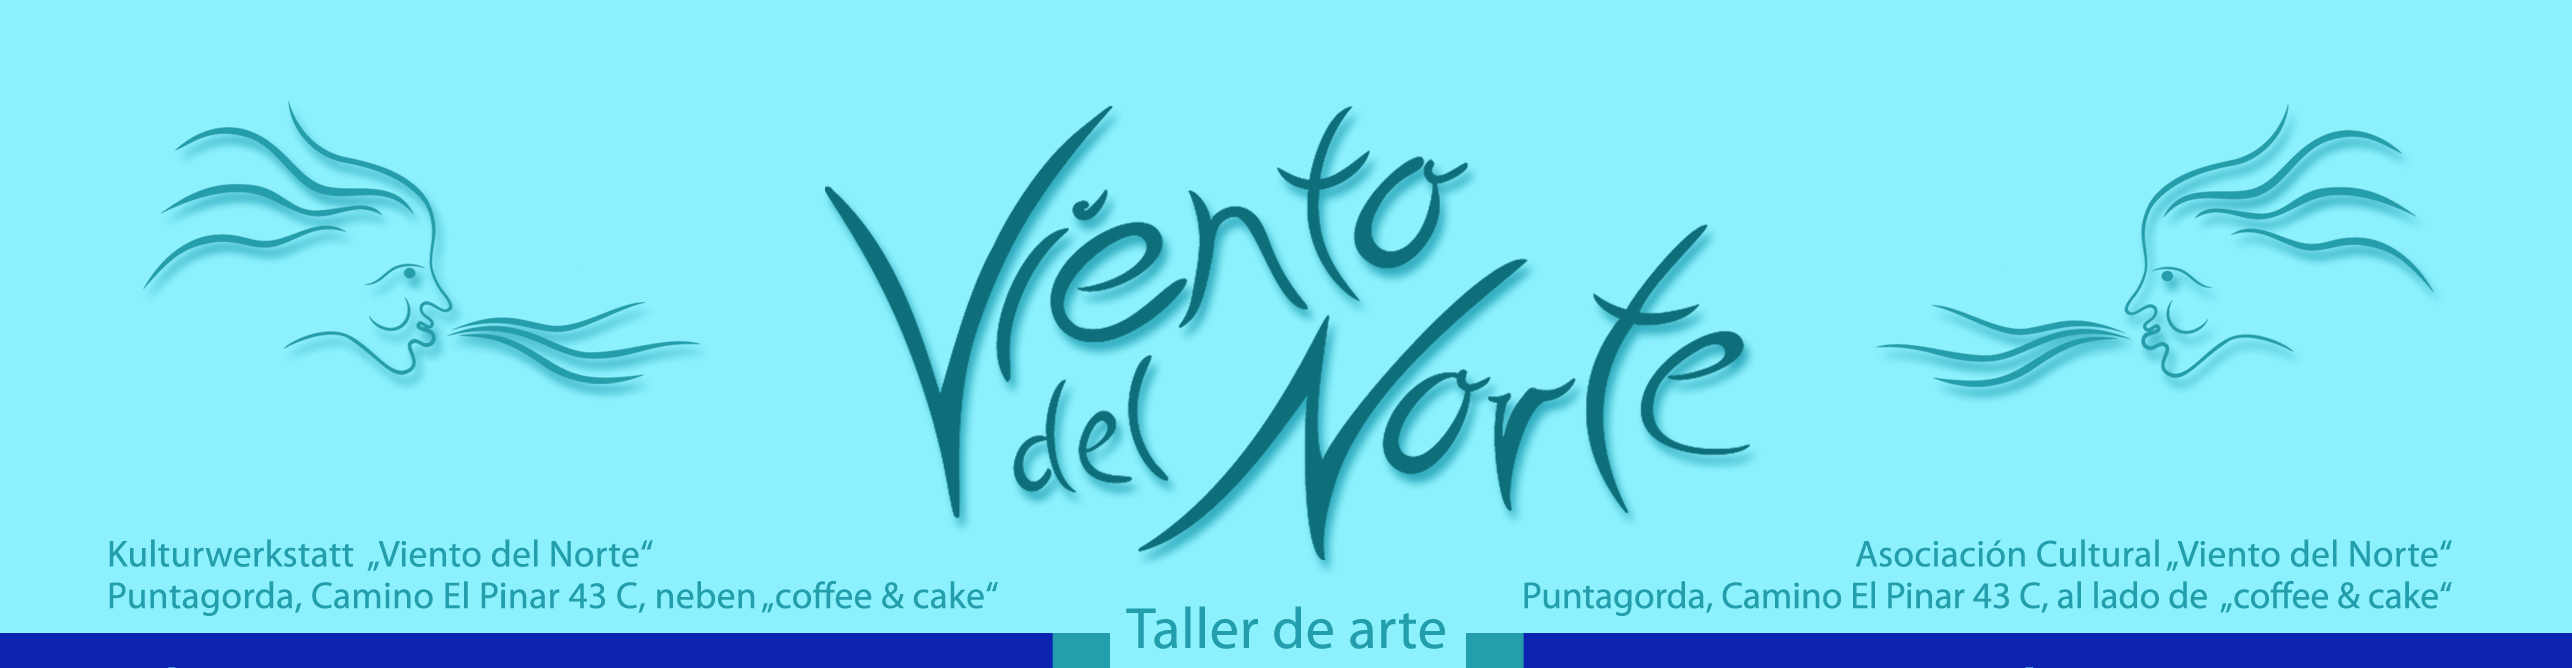 Taller de arte Viento del Norte Puntagorda